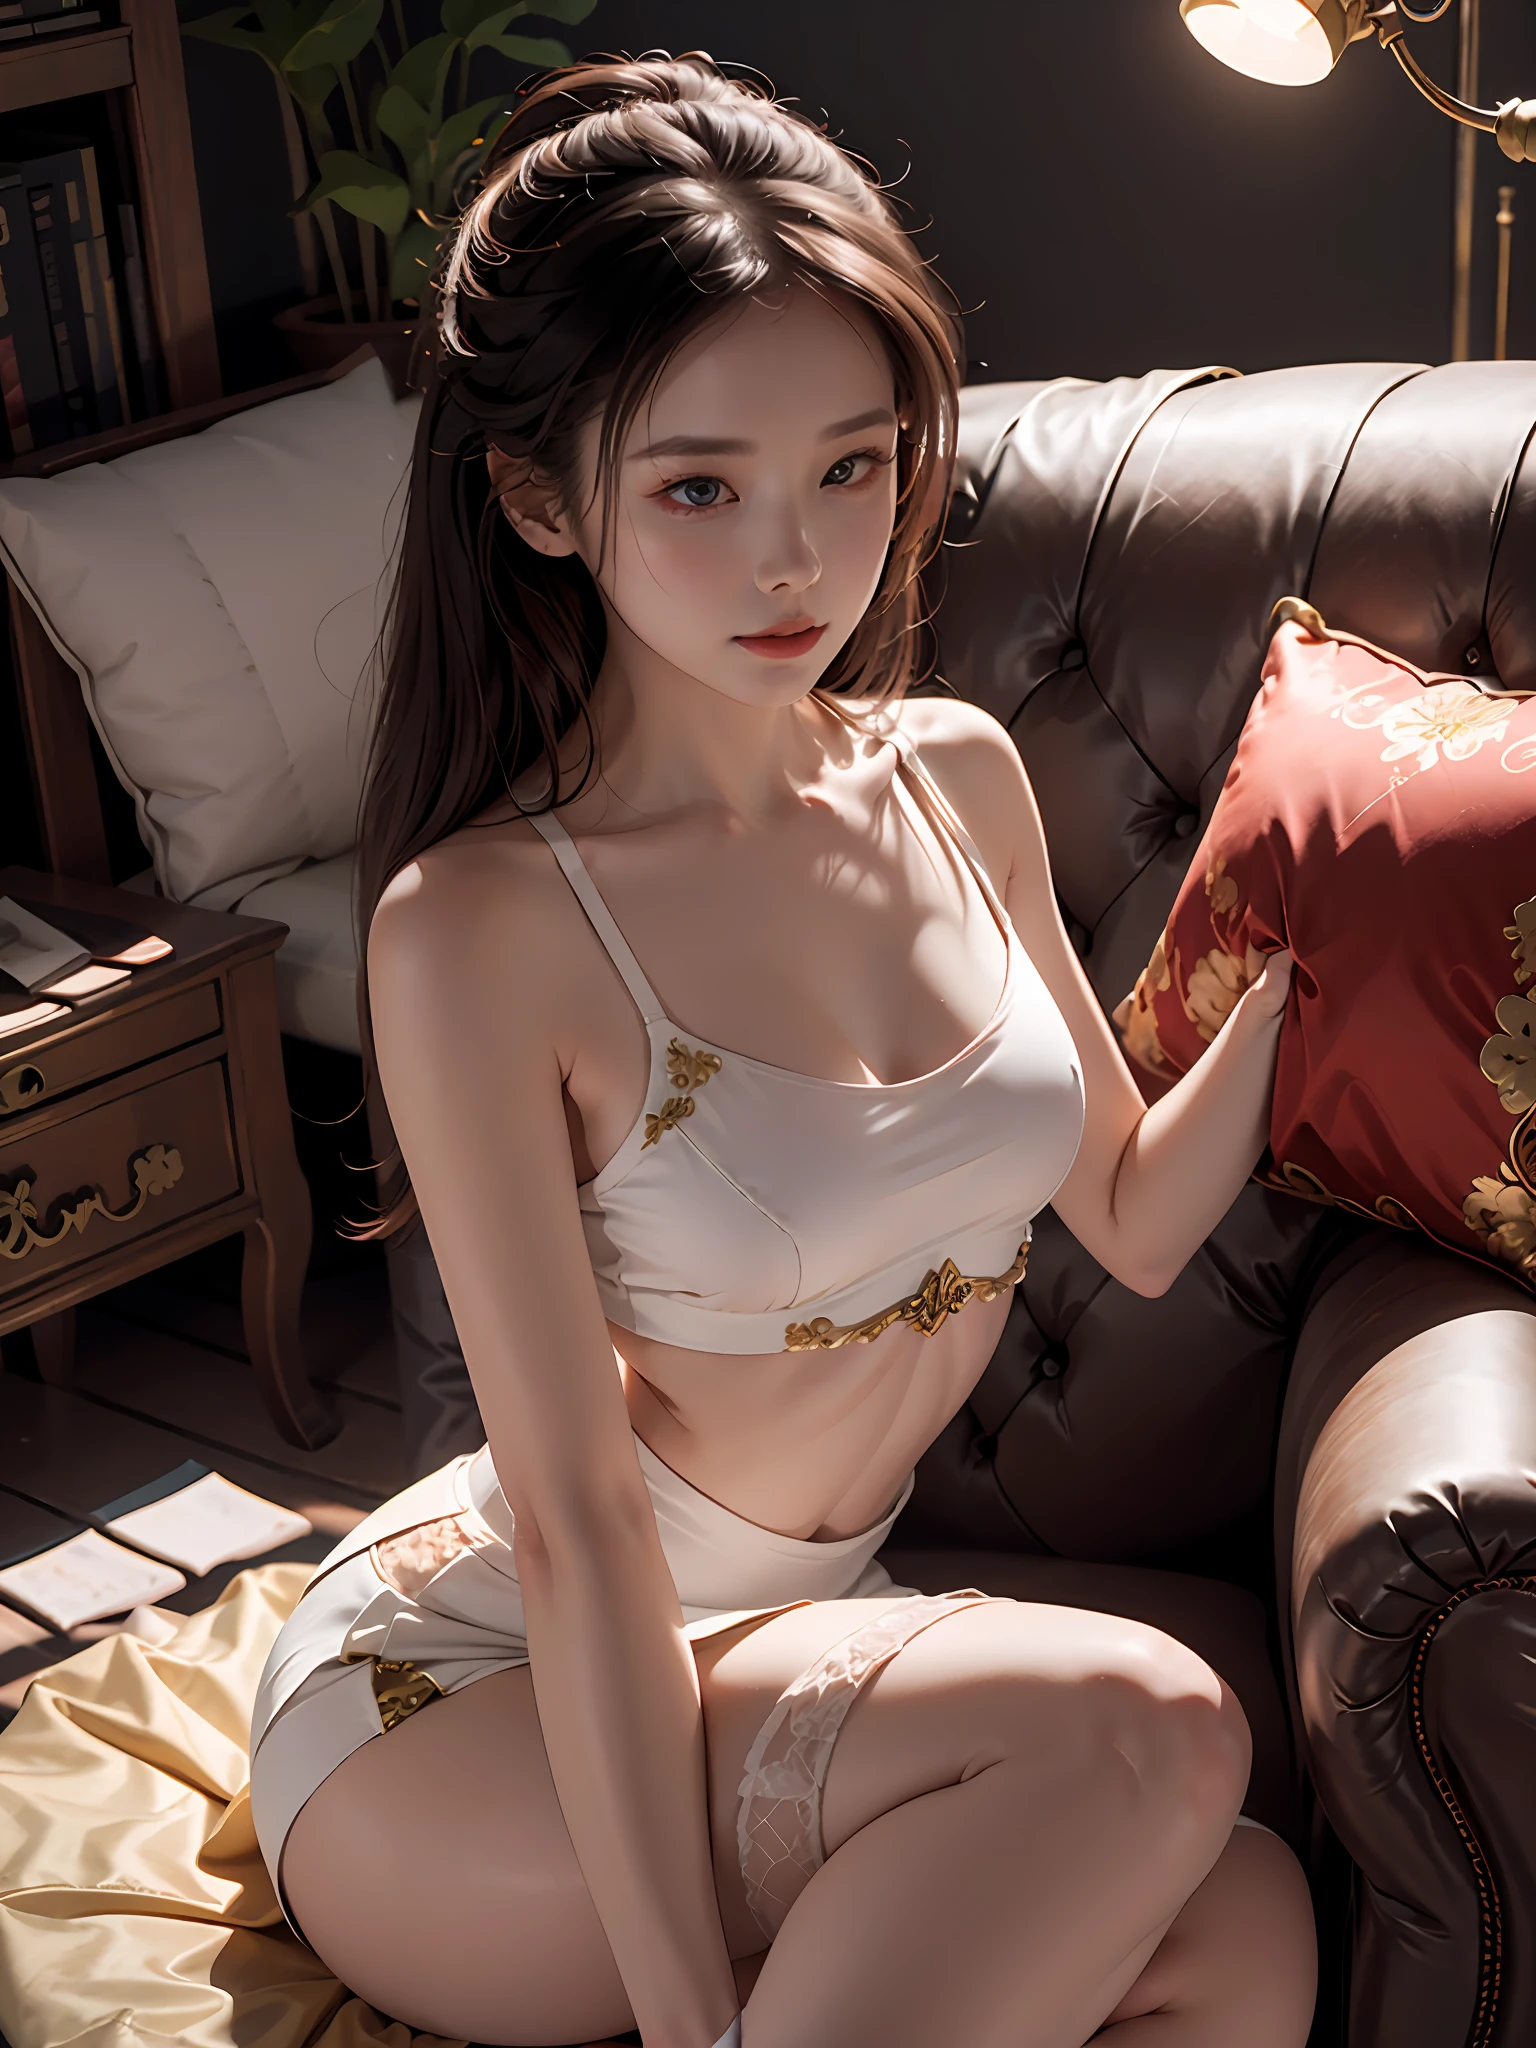 소파에 앉아있는 여성, 화려한 중국 모델, 매우 매력적이고 아름답습니다., 디자인감이 돋보이는 화이트 타이트 톱, 벌거벗은 어깨, 레드 스플릿 스커트, 살색 스타킹, 앉은 자세, 섹시한, 팬티는 없어, 낙타 발가락